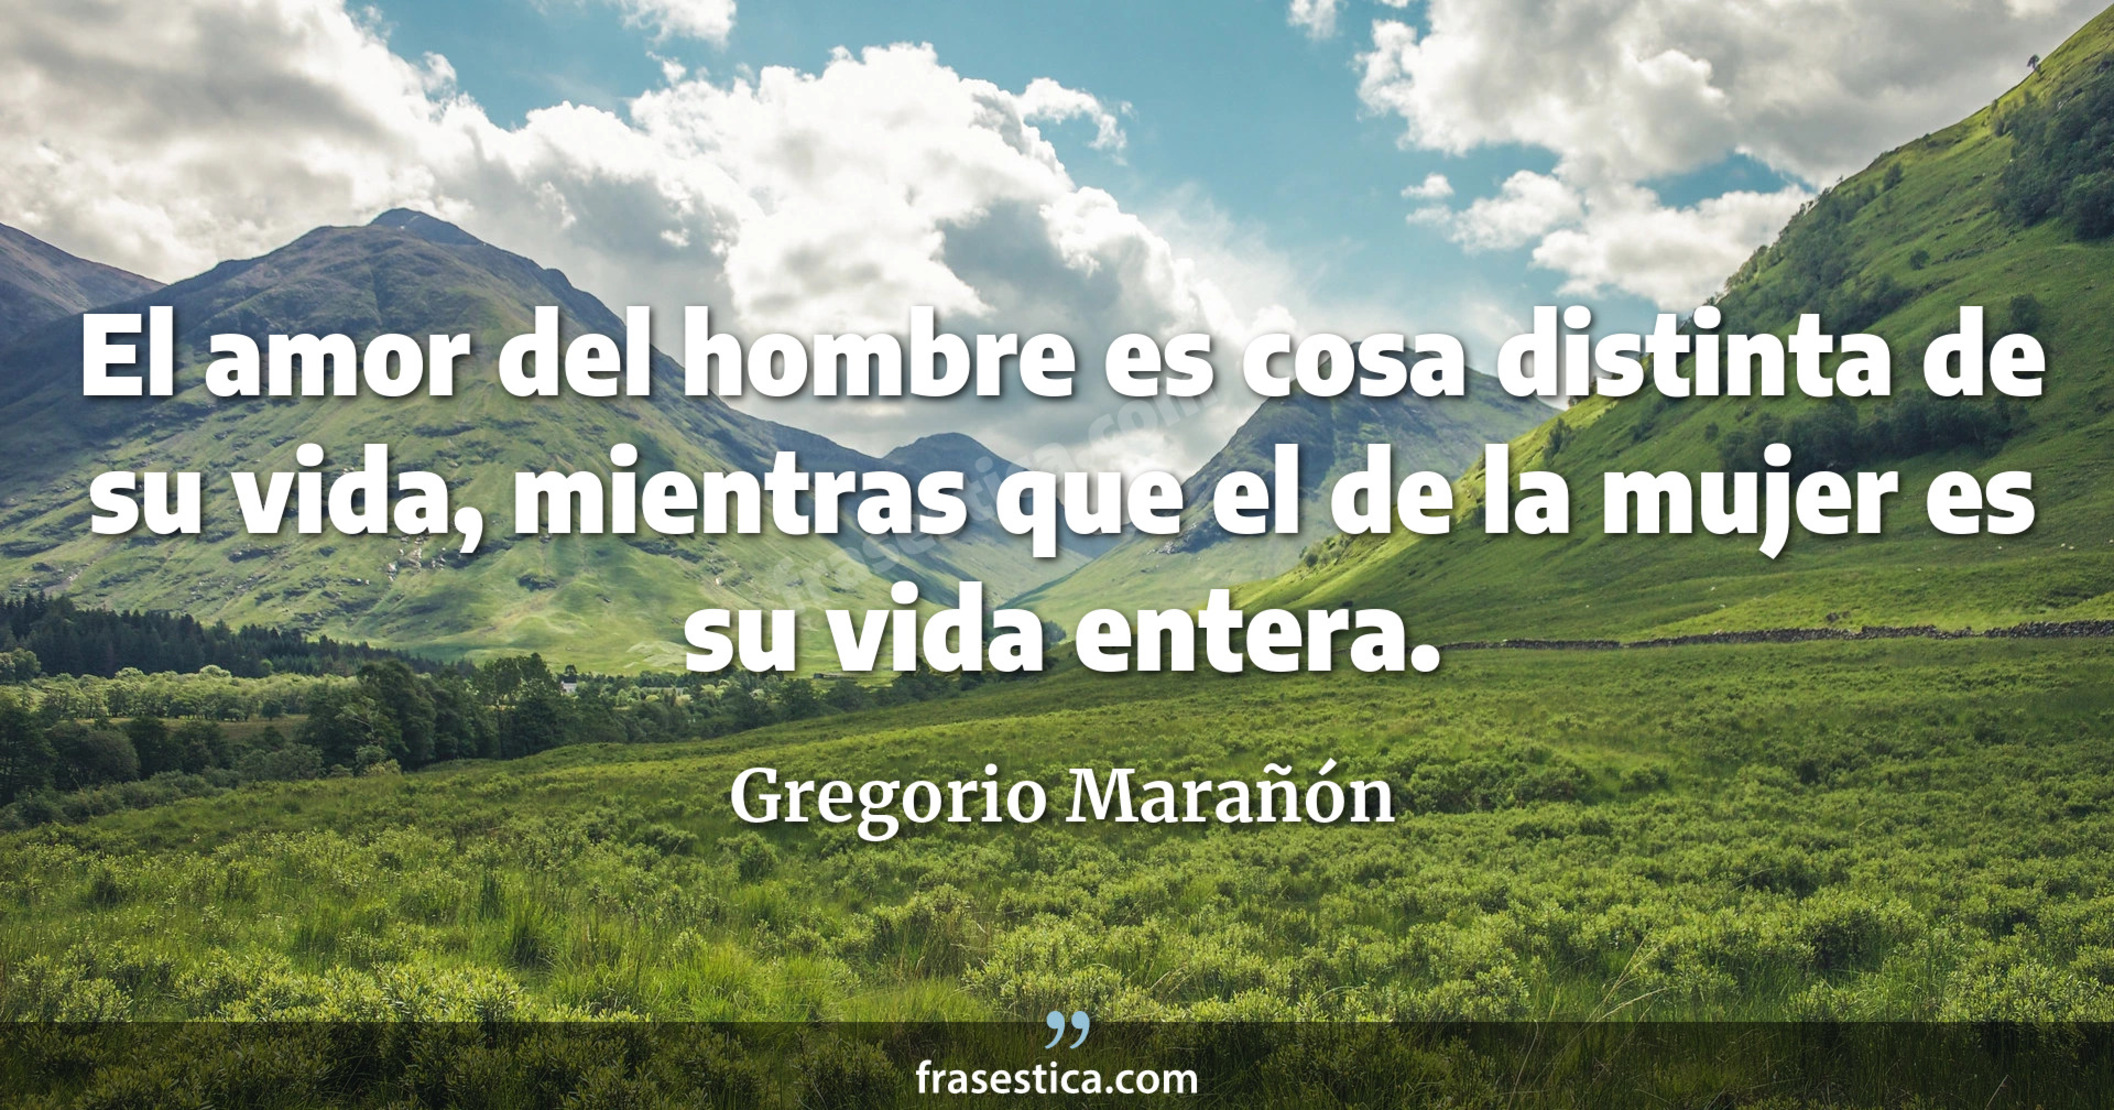 El amor del hombre es cosa distinta de su vida, mientras que el de la mujer es su vida entera. - Gregorio Marañón